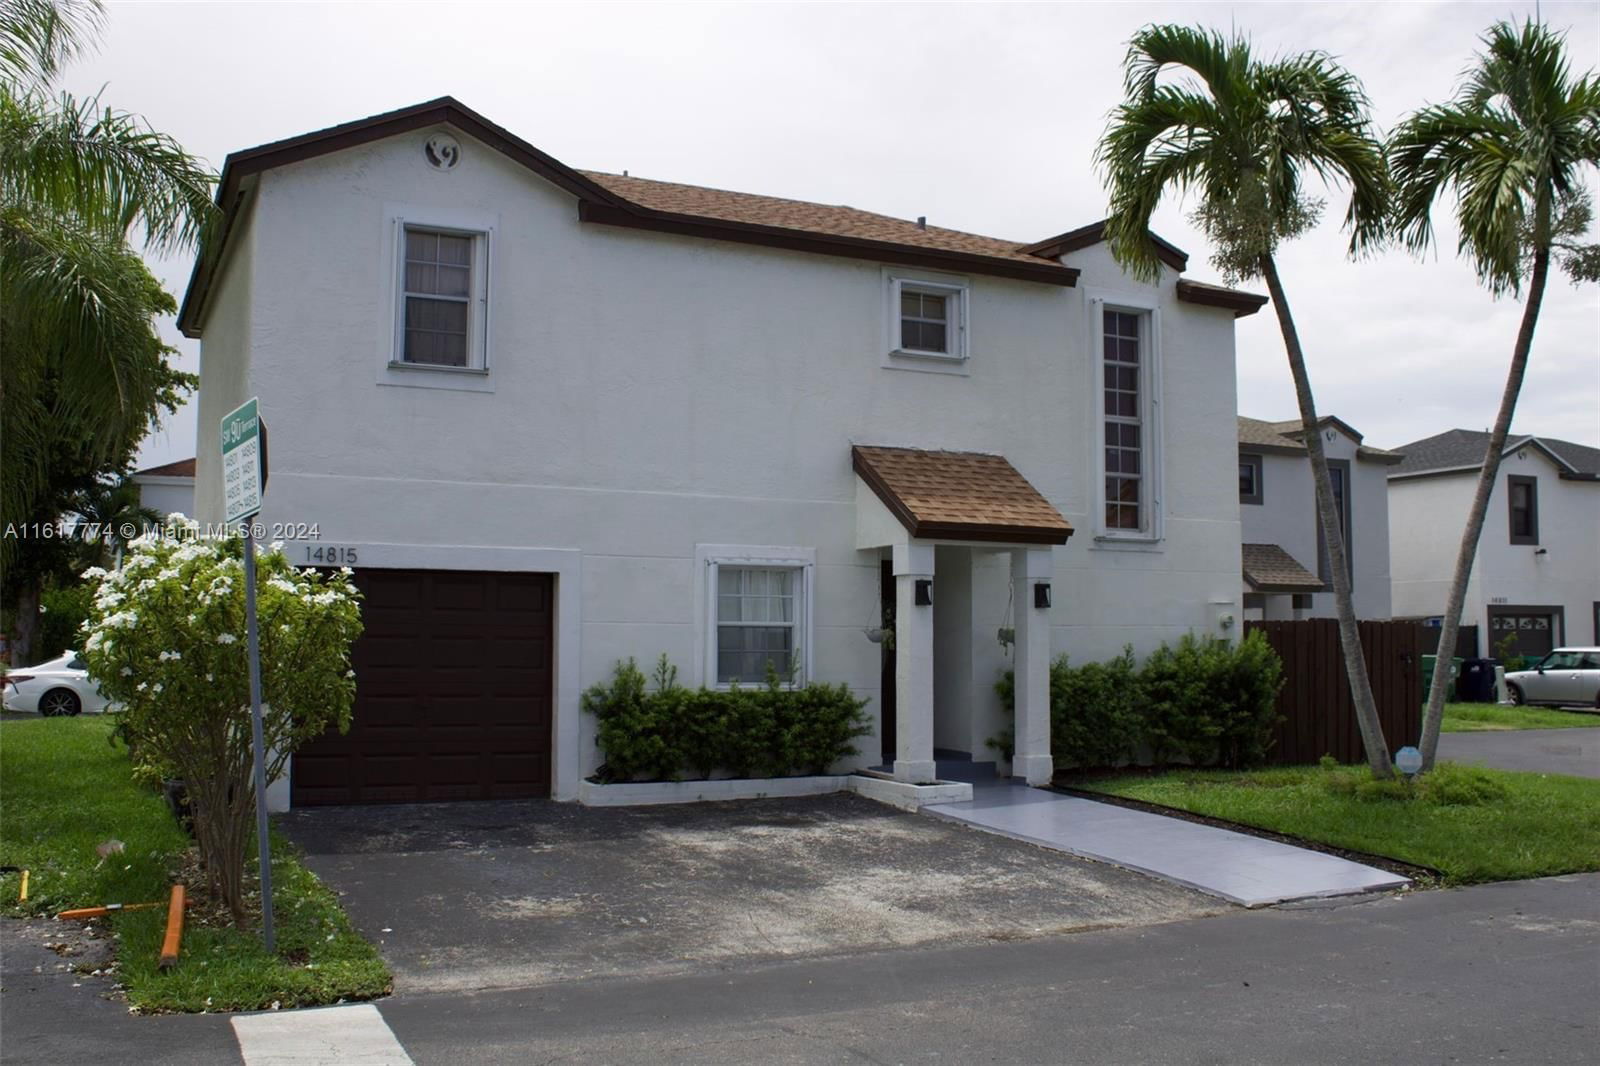 Real estate property located at 14815 90th Ter, Miami-Dade County, PANACHE SEC 3, Miami, FL